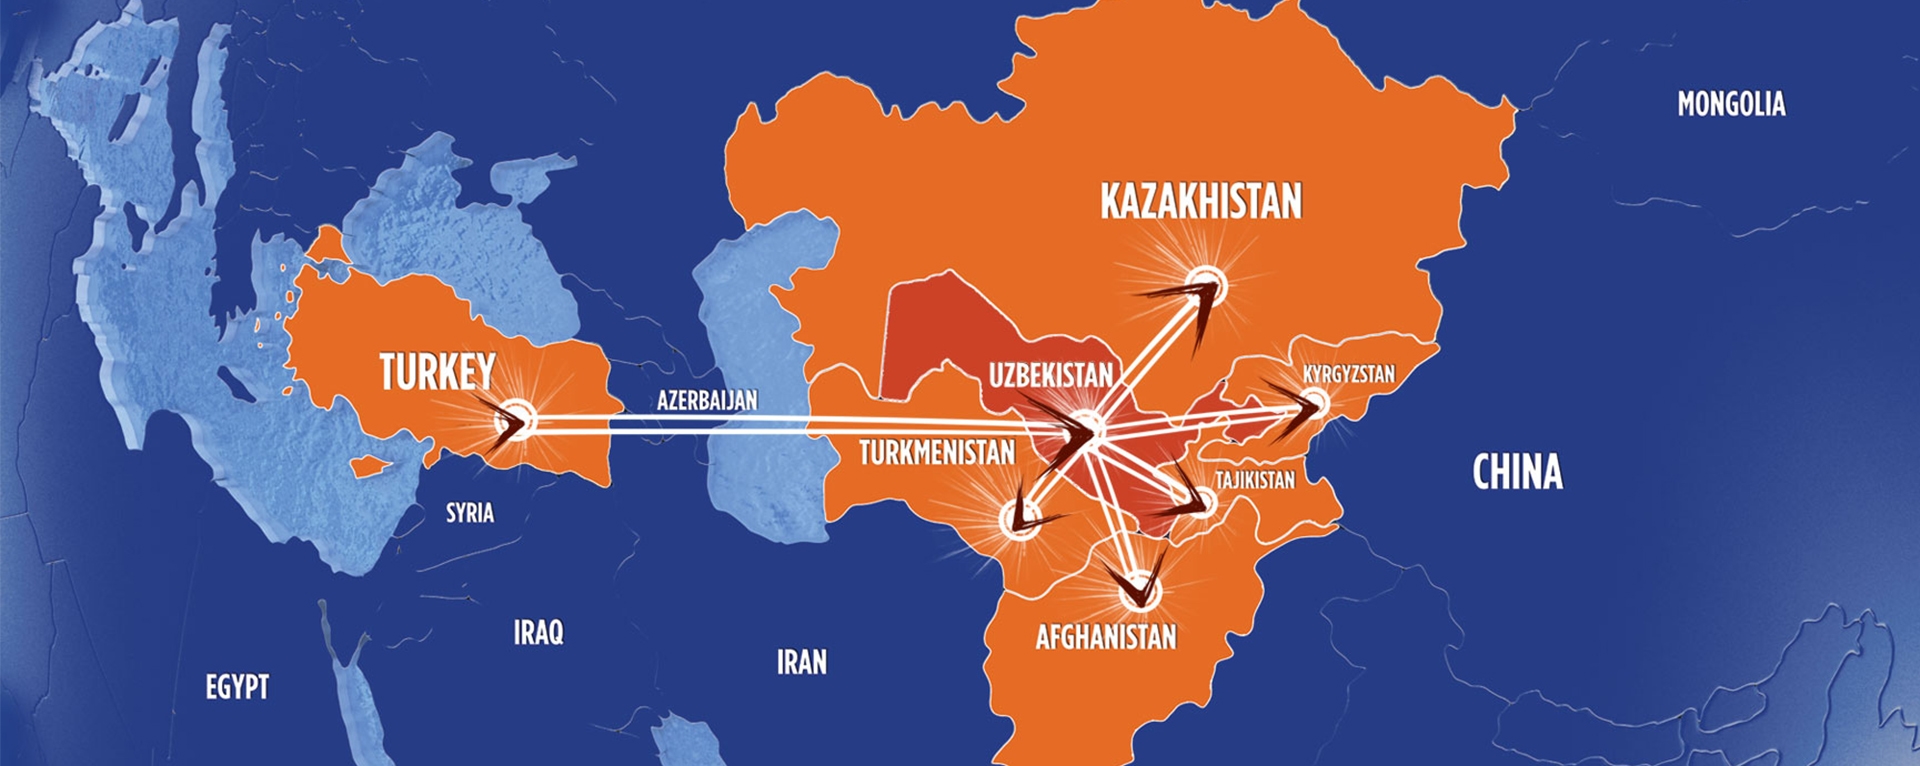 Türkiye’nin Enerji Markası Mimsan Orta Asya’da